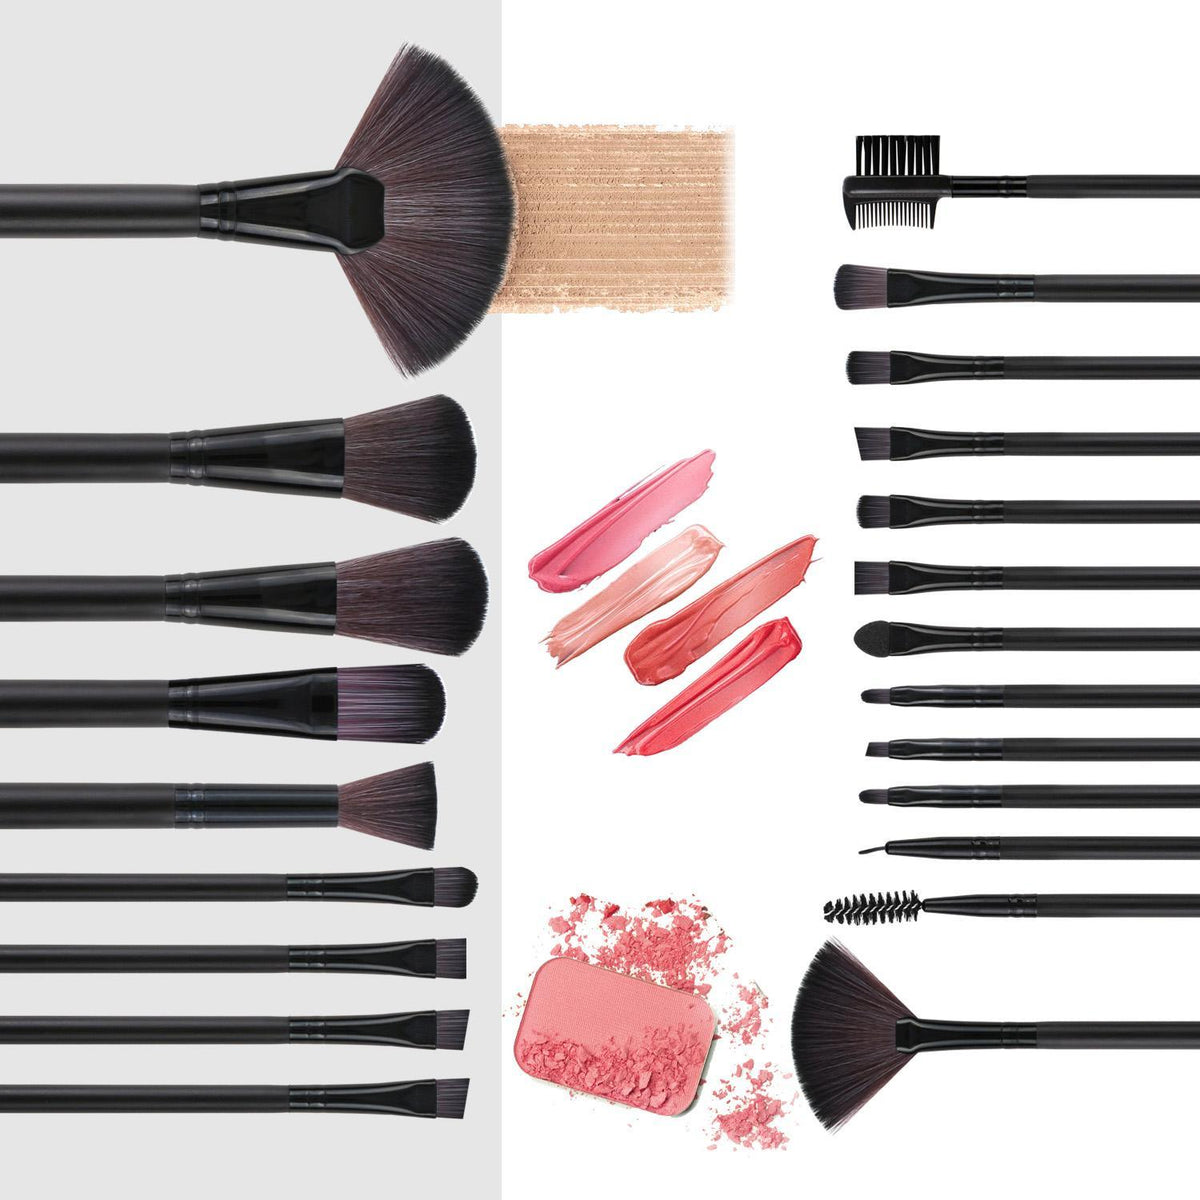 22 Piece Makeup Brush Set with Storage Bag